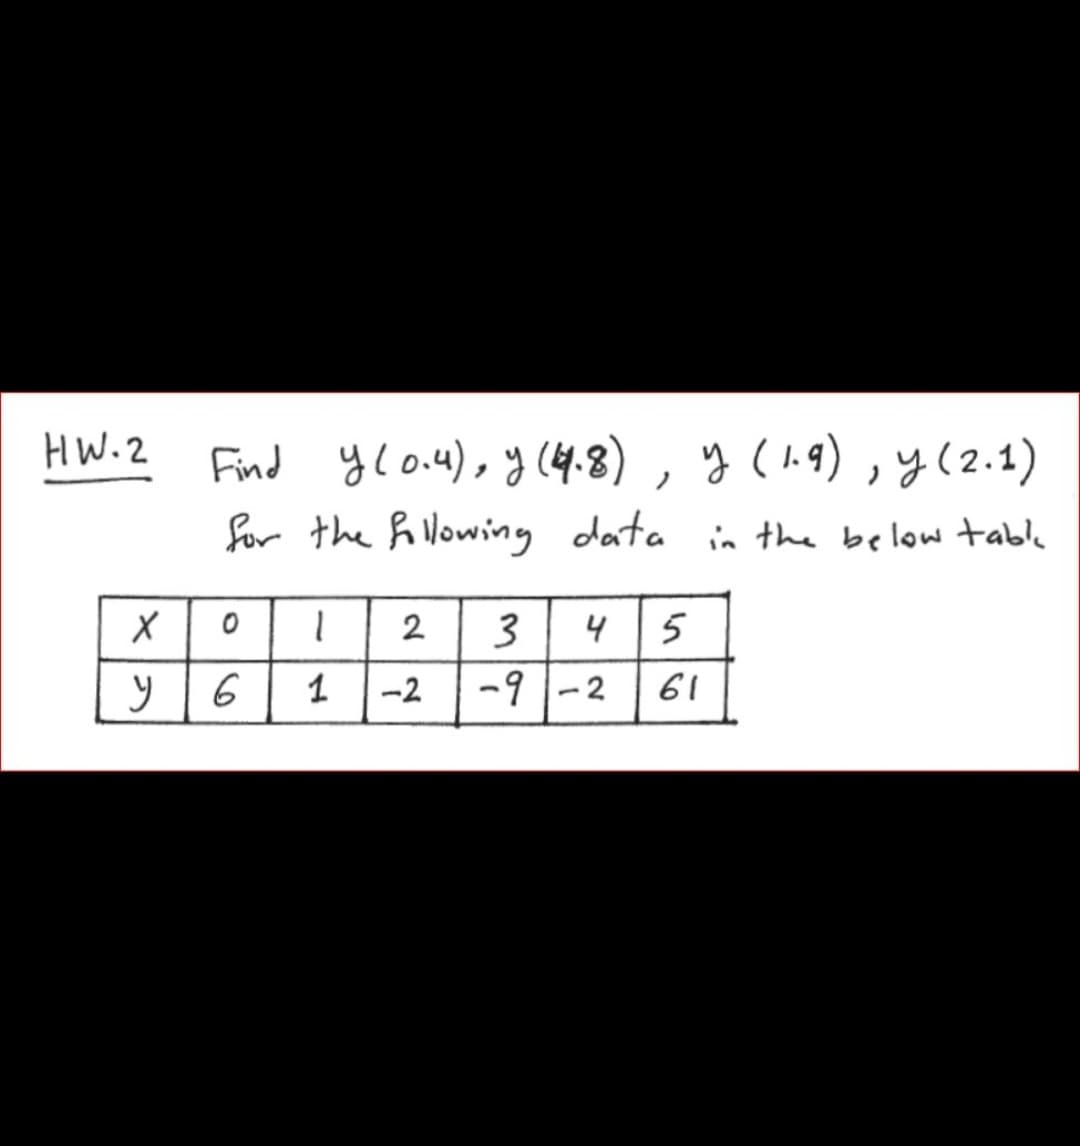 HW.2
Find ylo.u), y (4.8) , y (19),y(2.1)
for the h Nowing data in the below table
2
4
5
6
1
-2
-91-2
61
